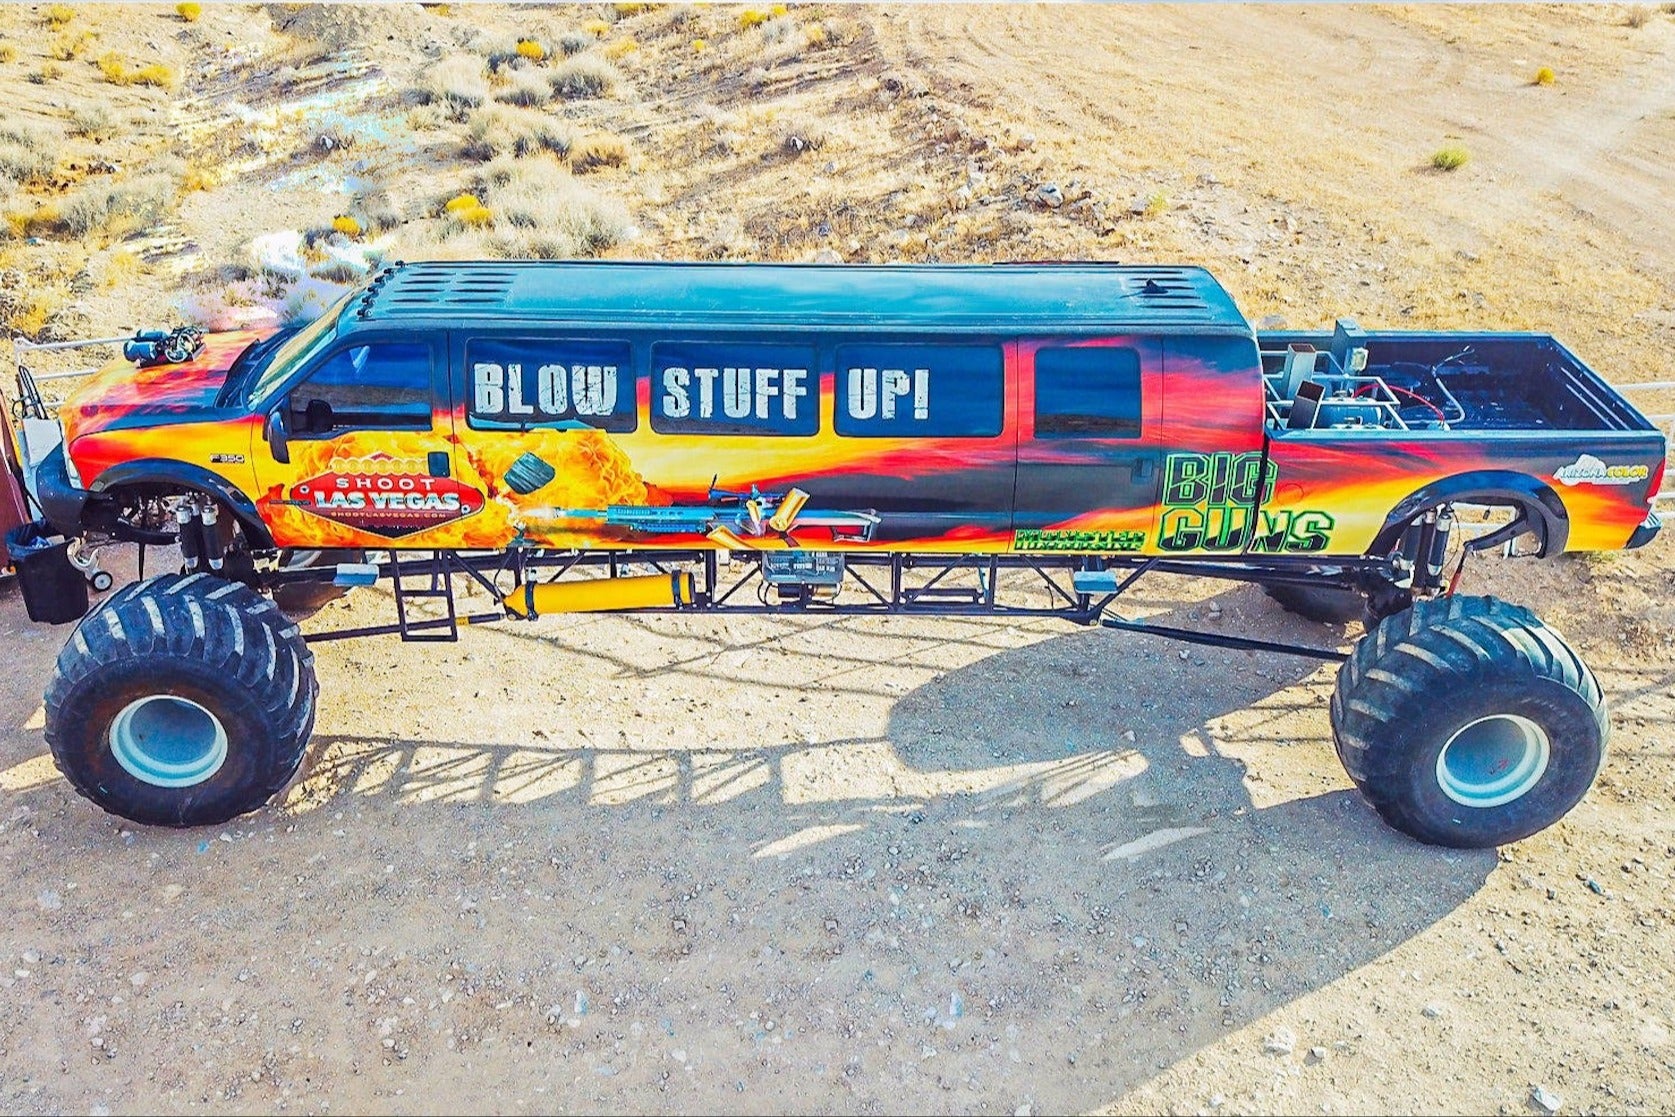 Guida di un monster truck nel deserto di Las Vegas